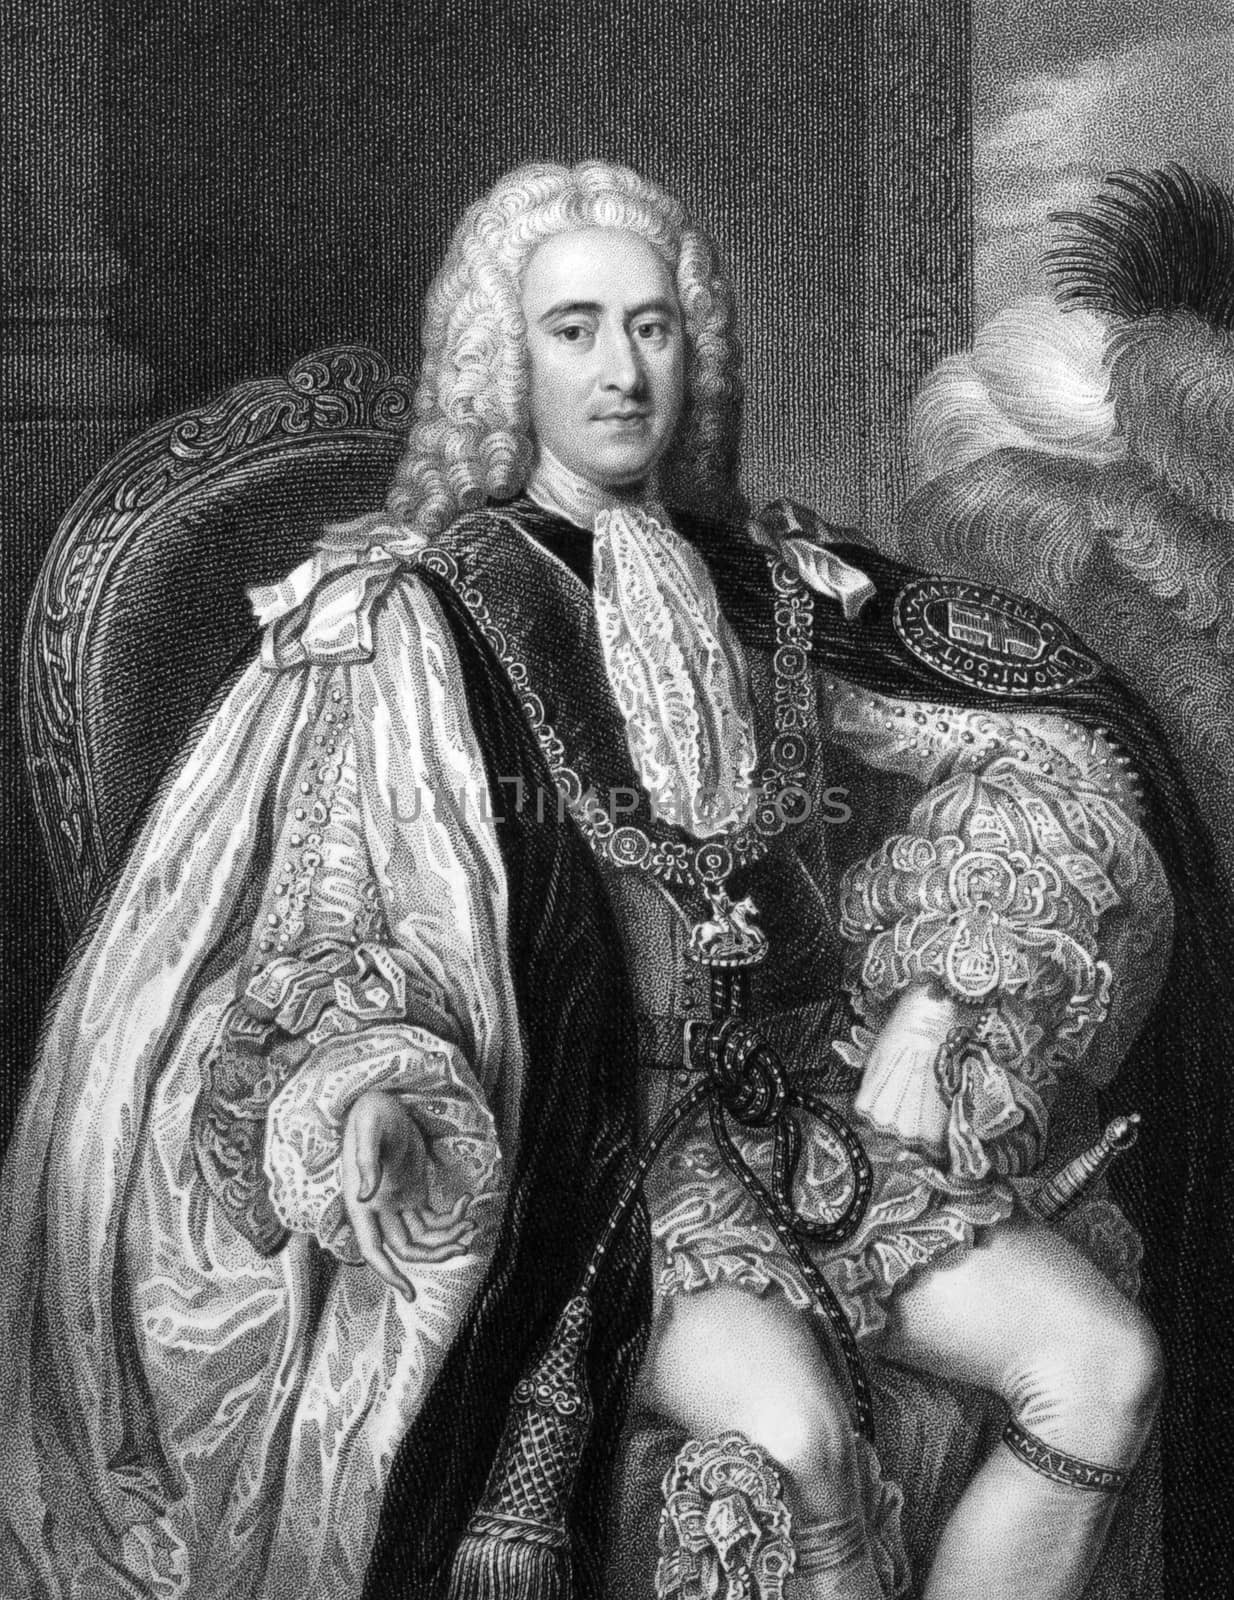 Thomas Pelham-Holles, 1st Duke of Newcastle by Georgios